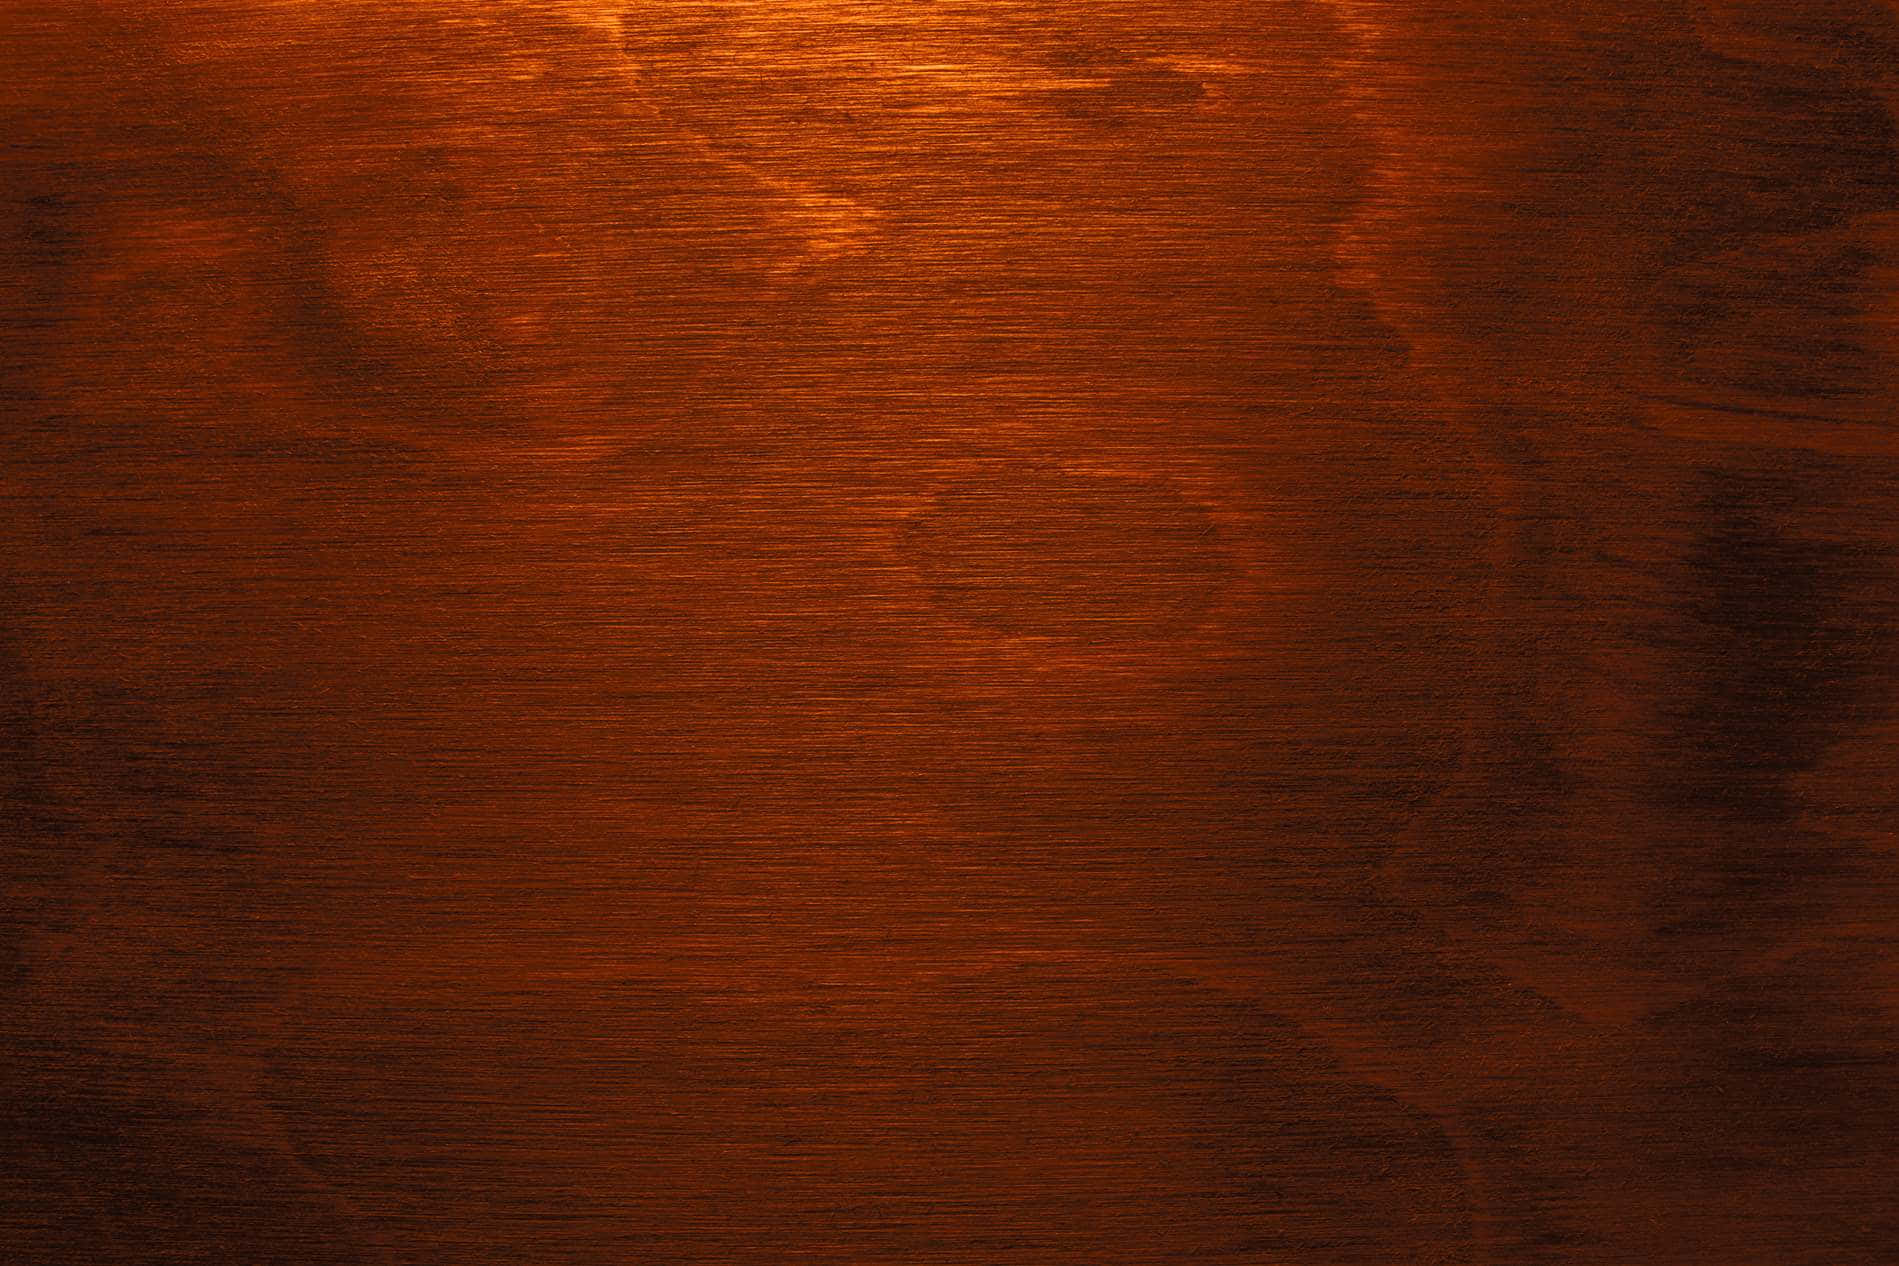 Elegant Mahogany Wood Texture Wallpaper